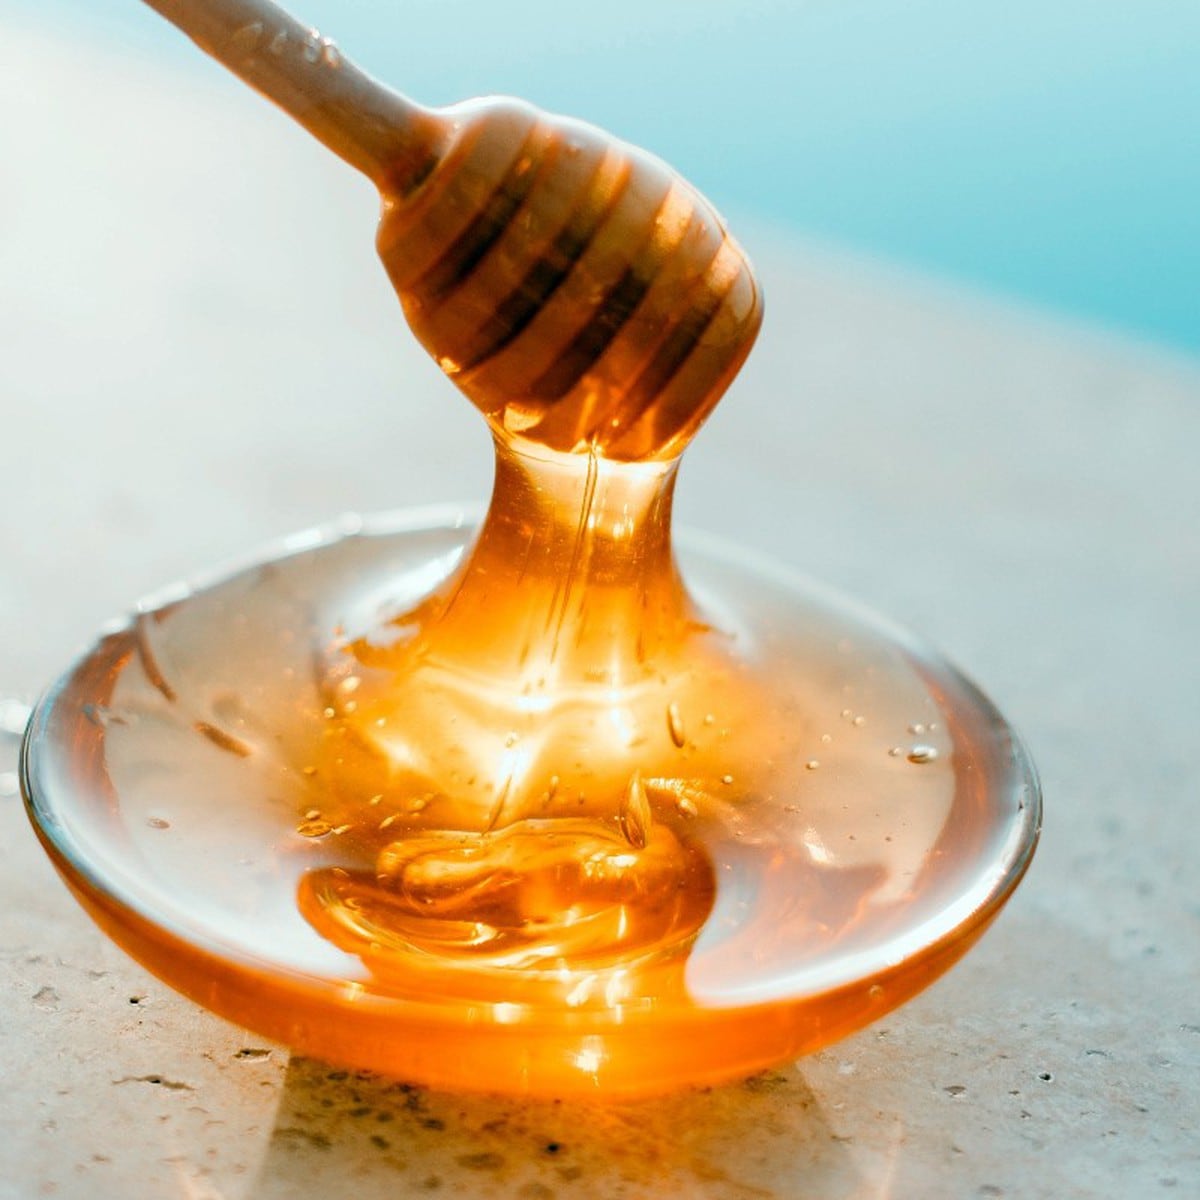 Mira estos sencillos trucos para descubrir si la miel que compraste es pura  o no 